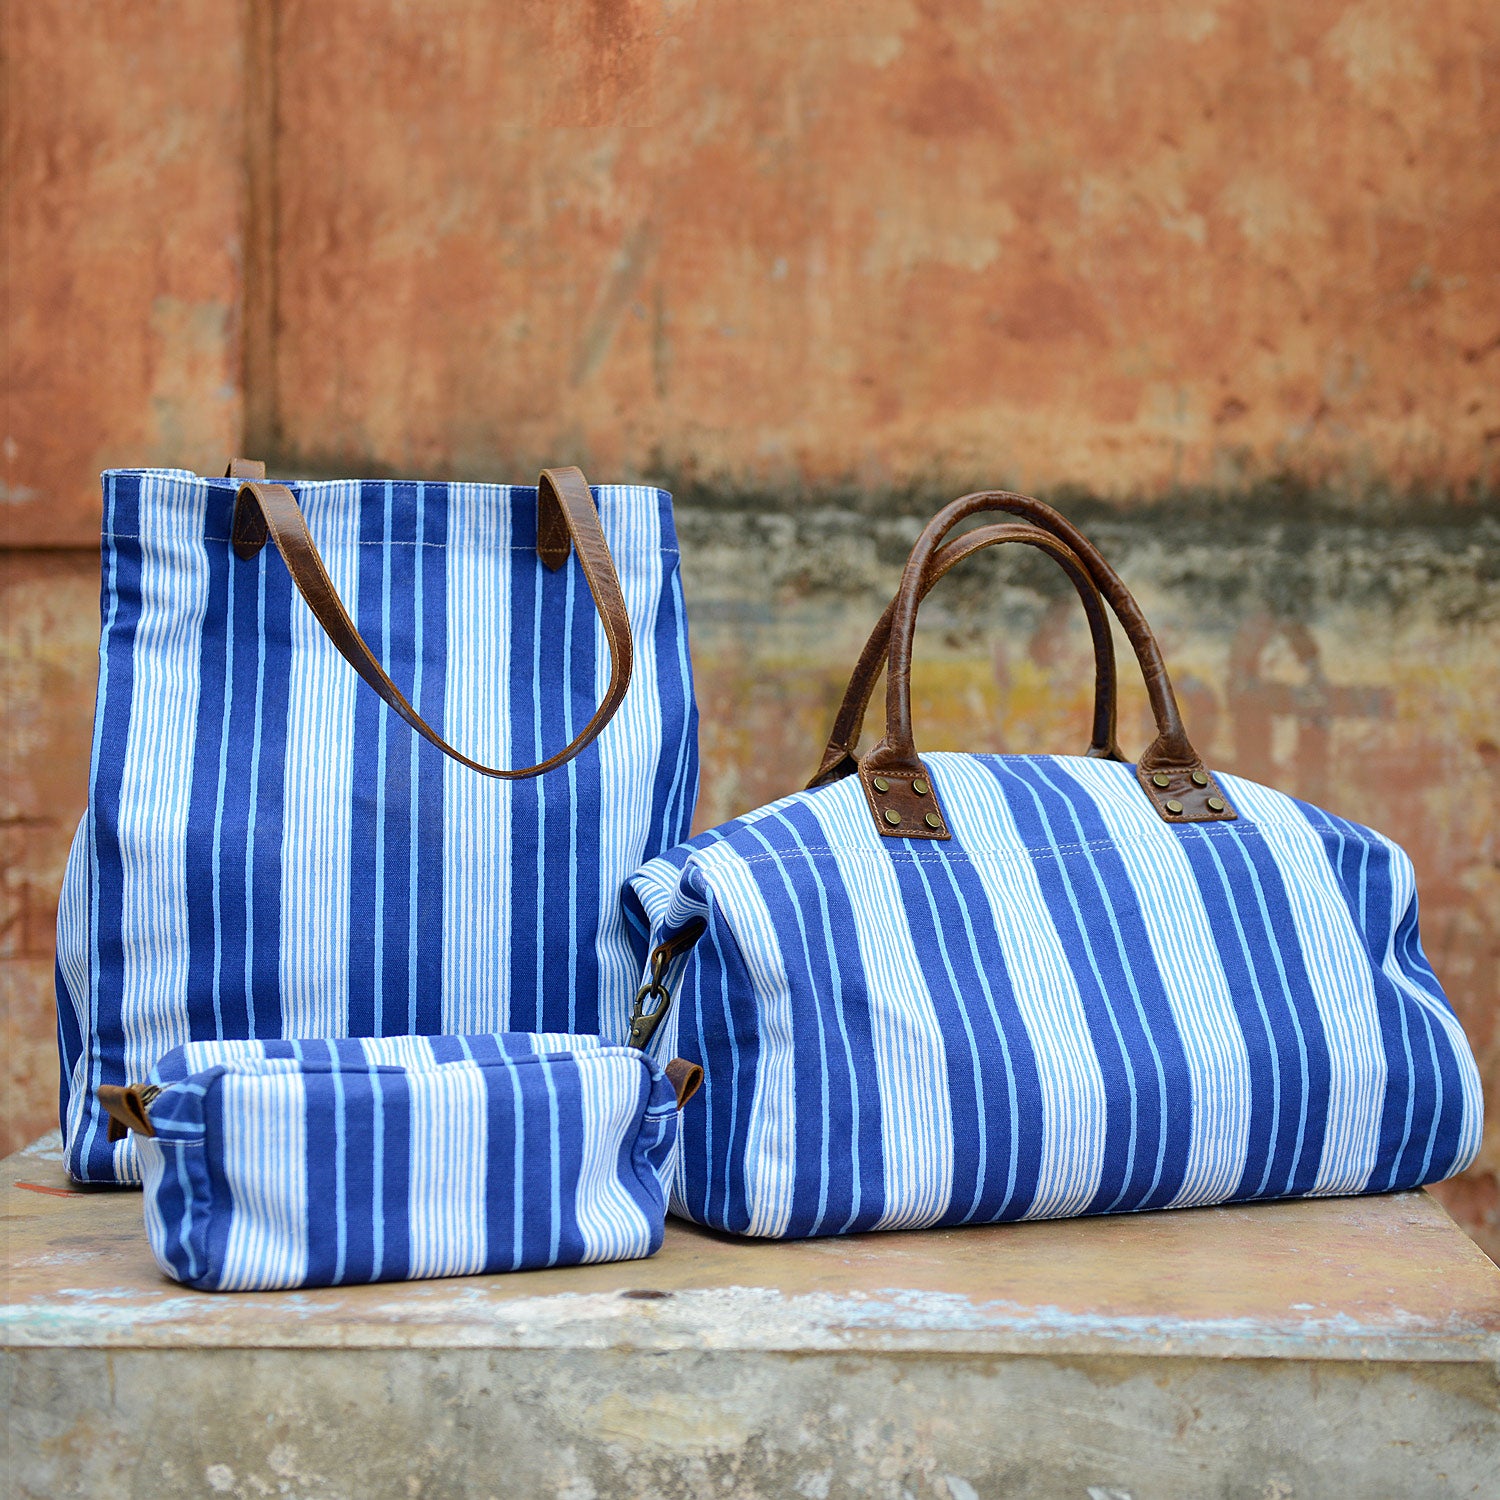 Mesh Tote Handbag - Shade & Shore™ Pink/striped : Target